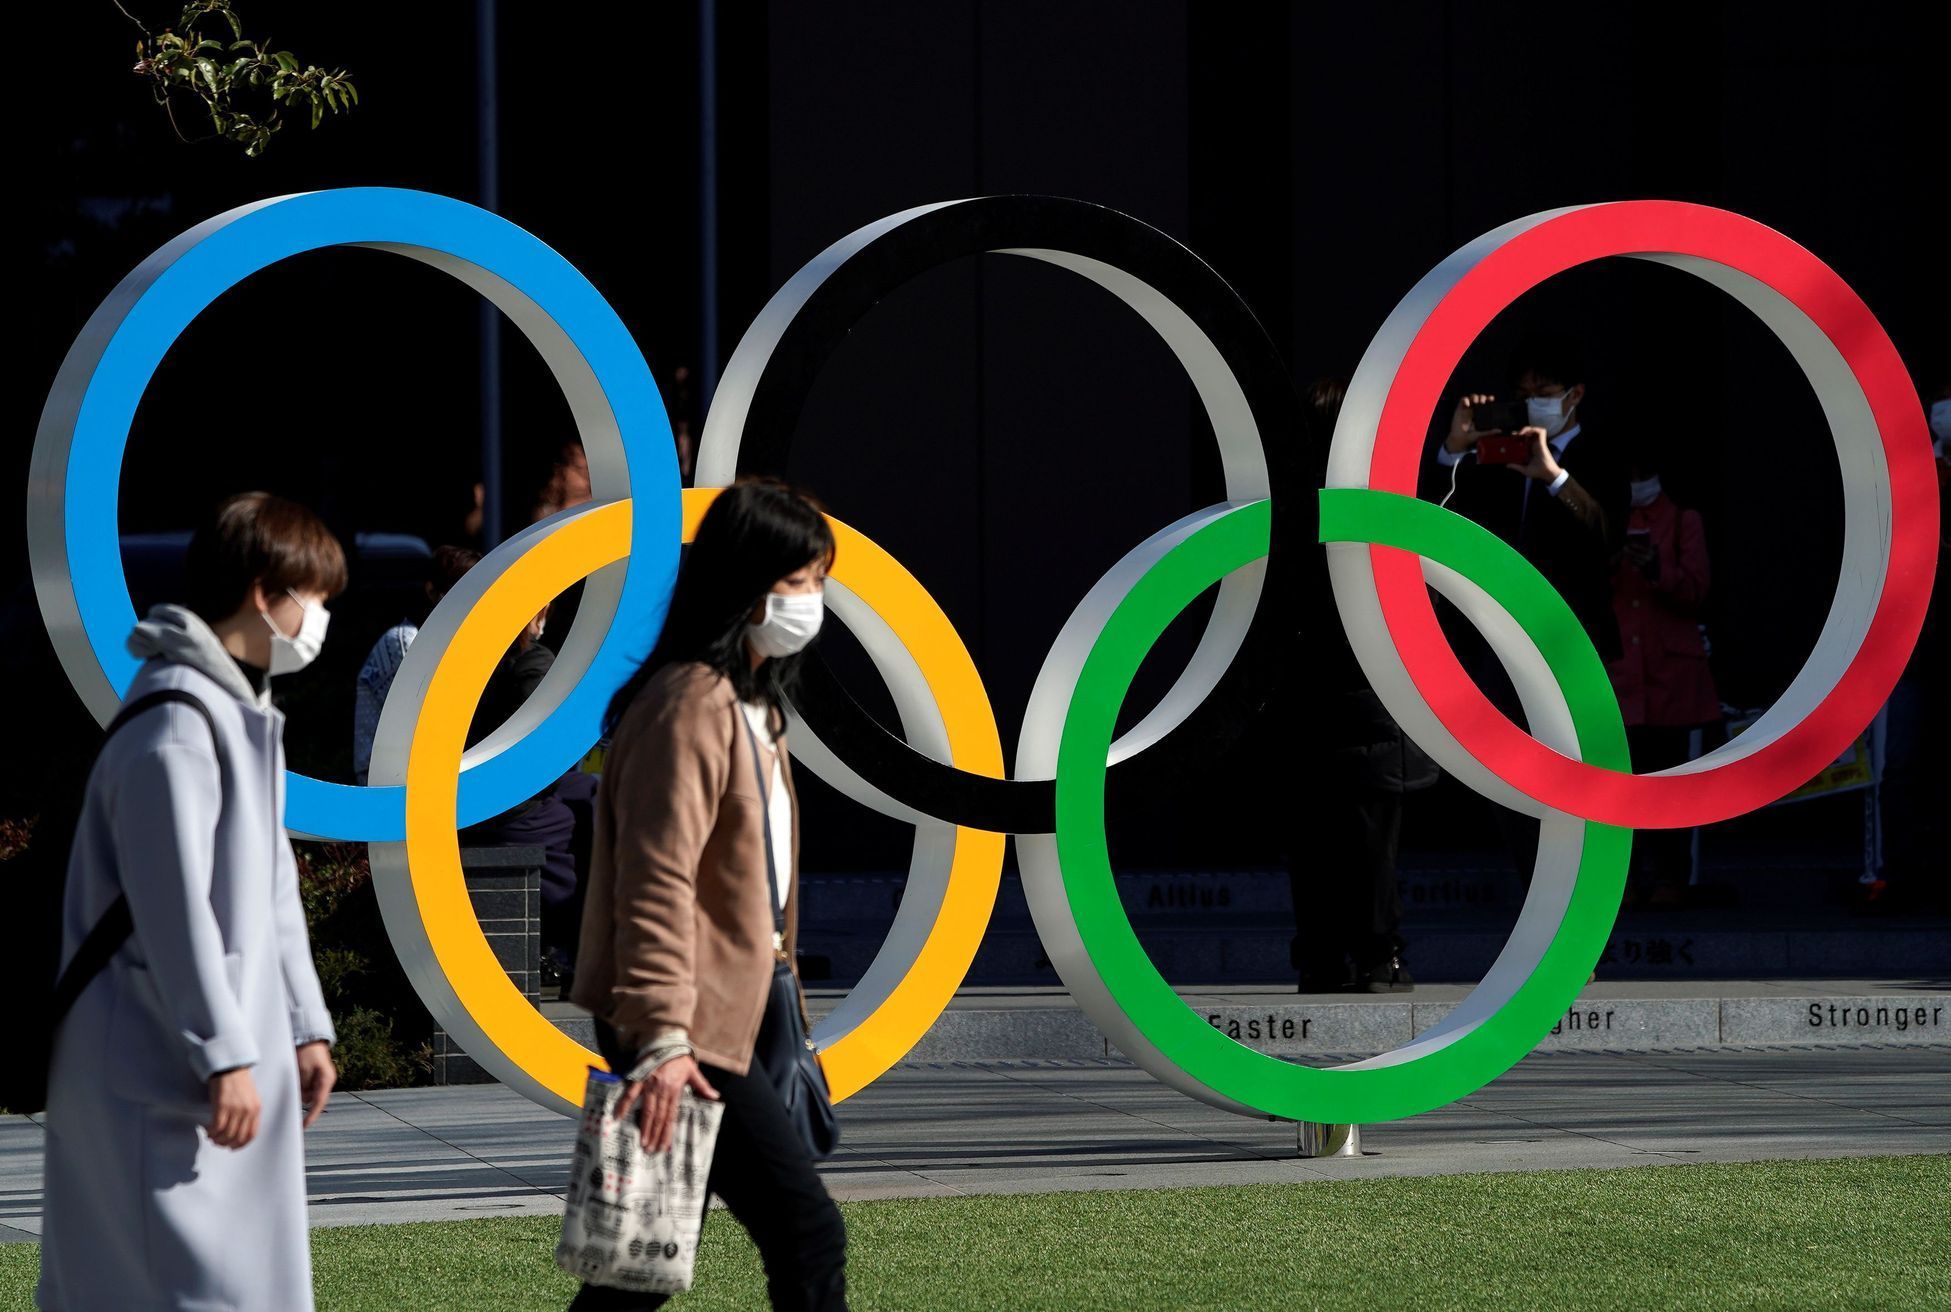 olympijské hry, Tokio 2020, olympiáda, olympijské kruhy